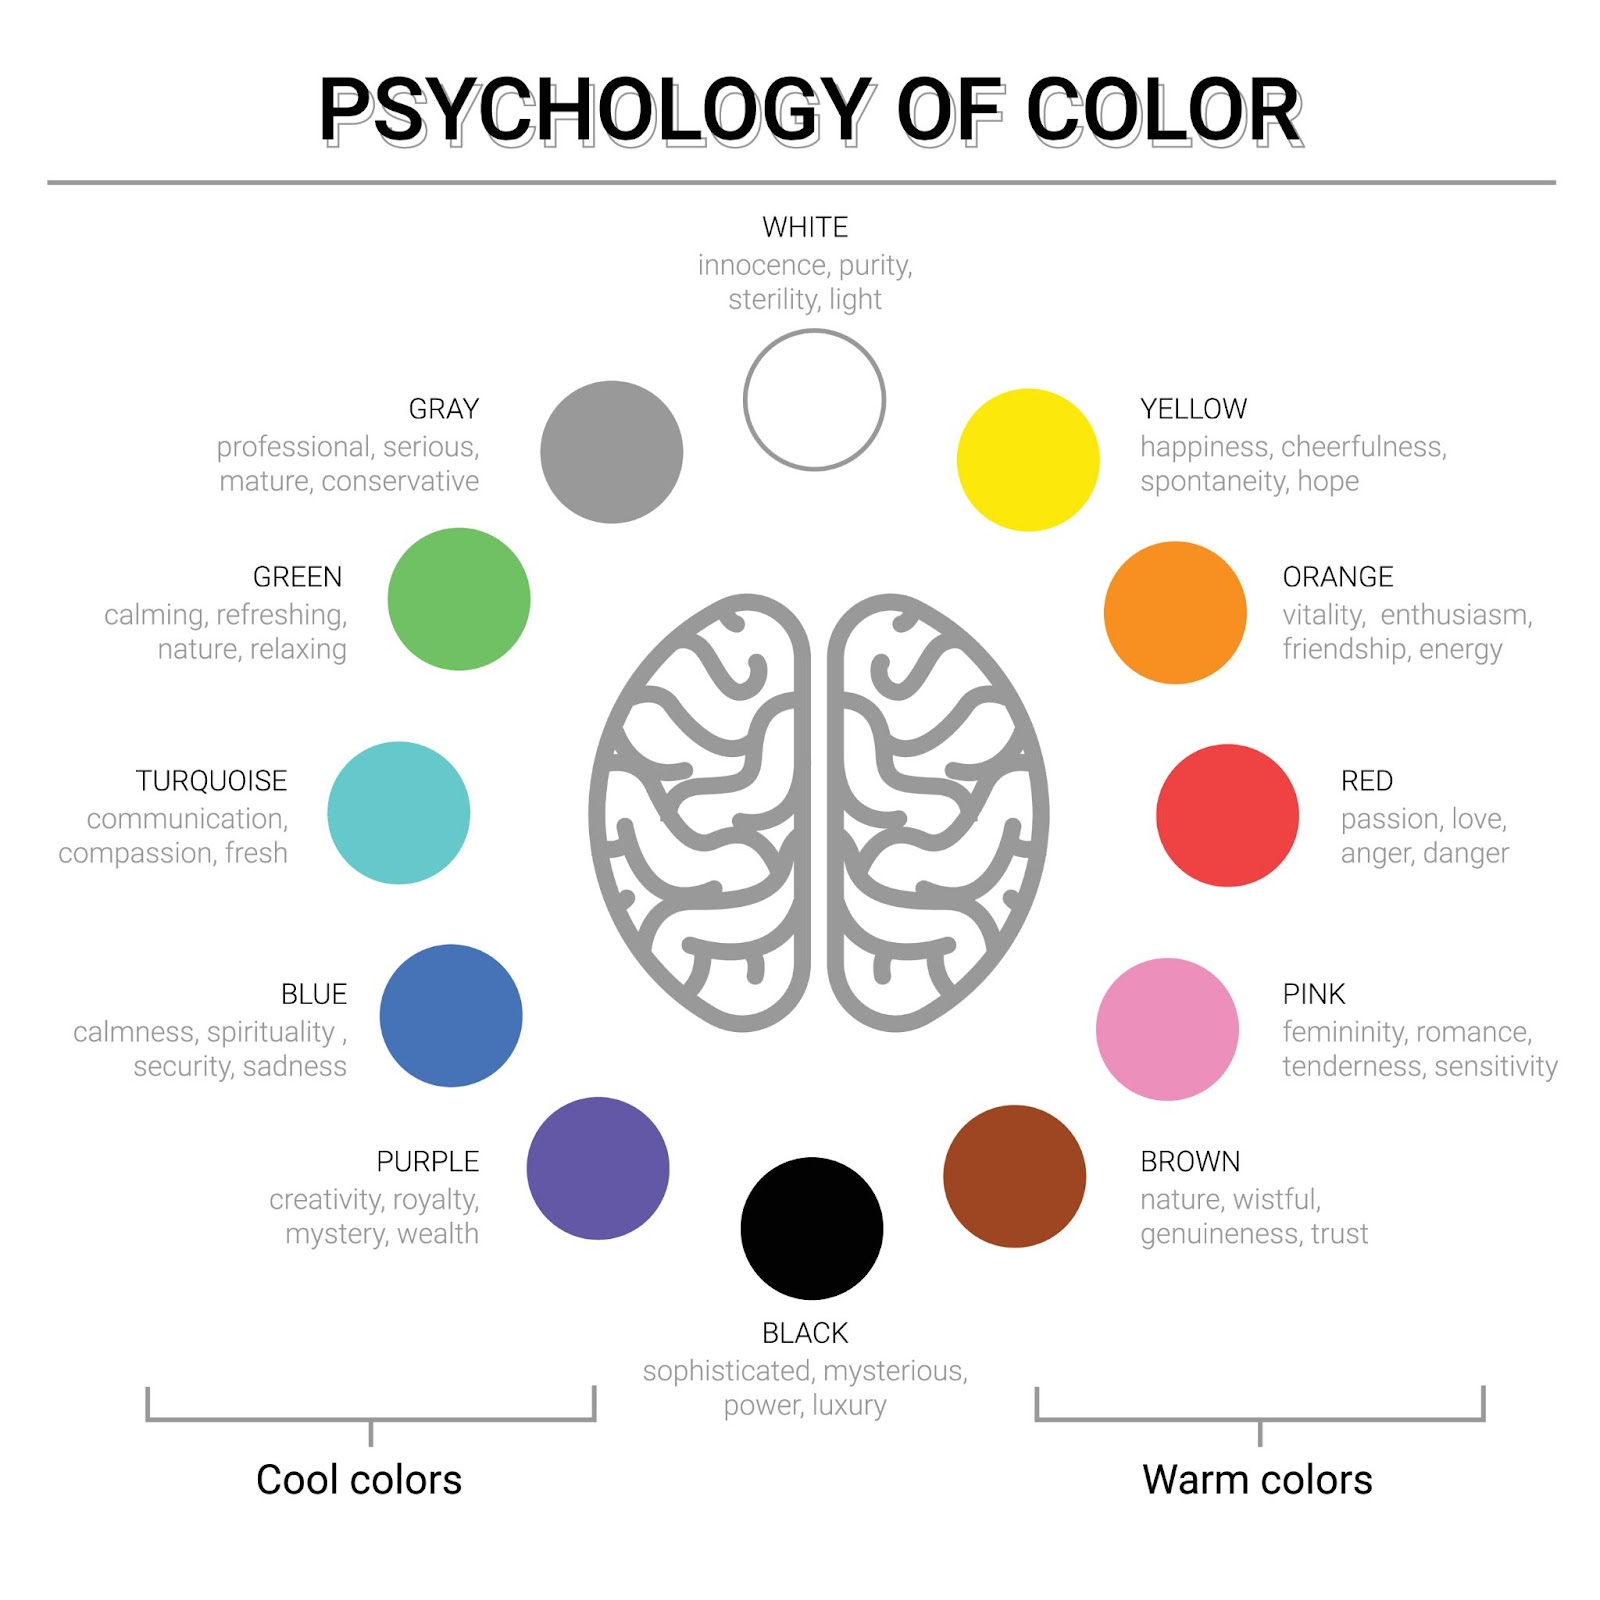 روانشناسی رنگ دقیقا چیست؟